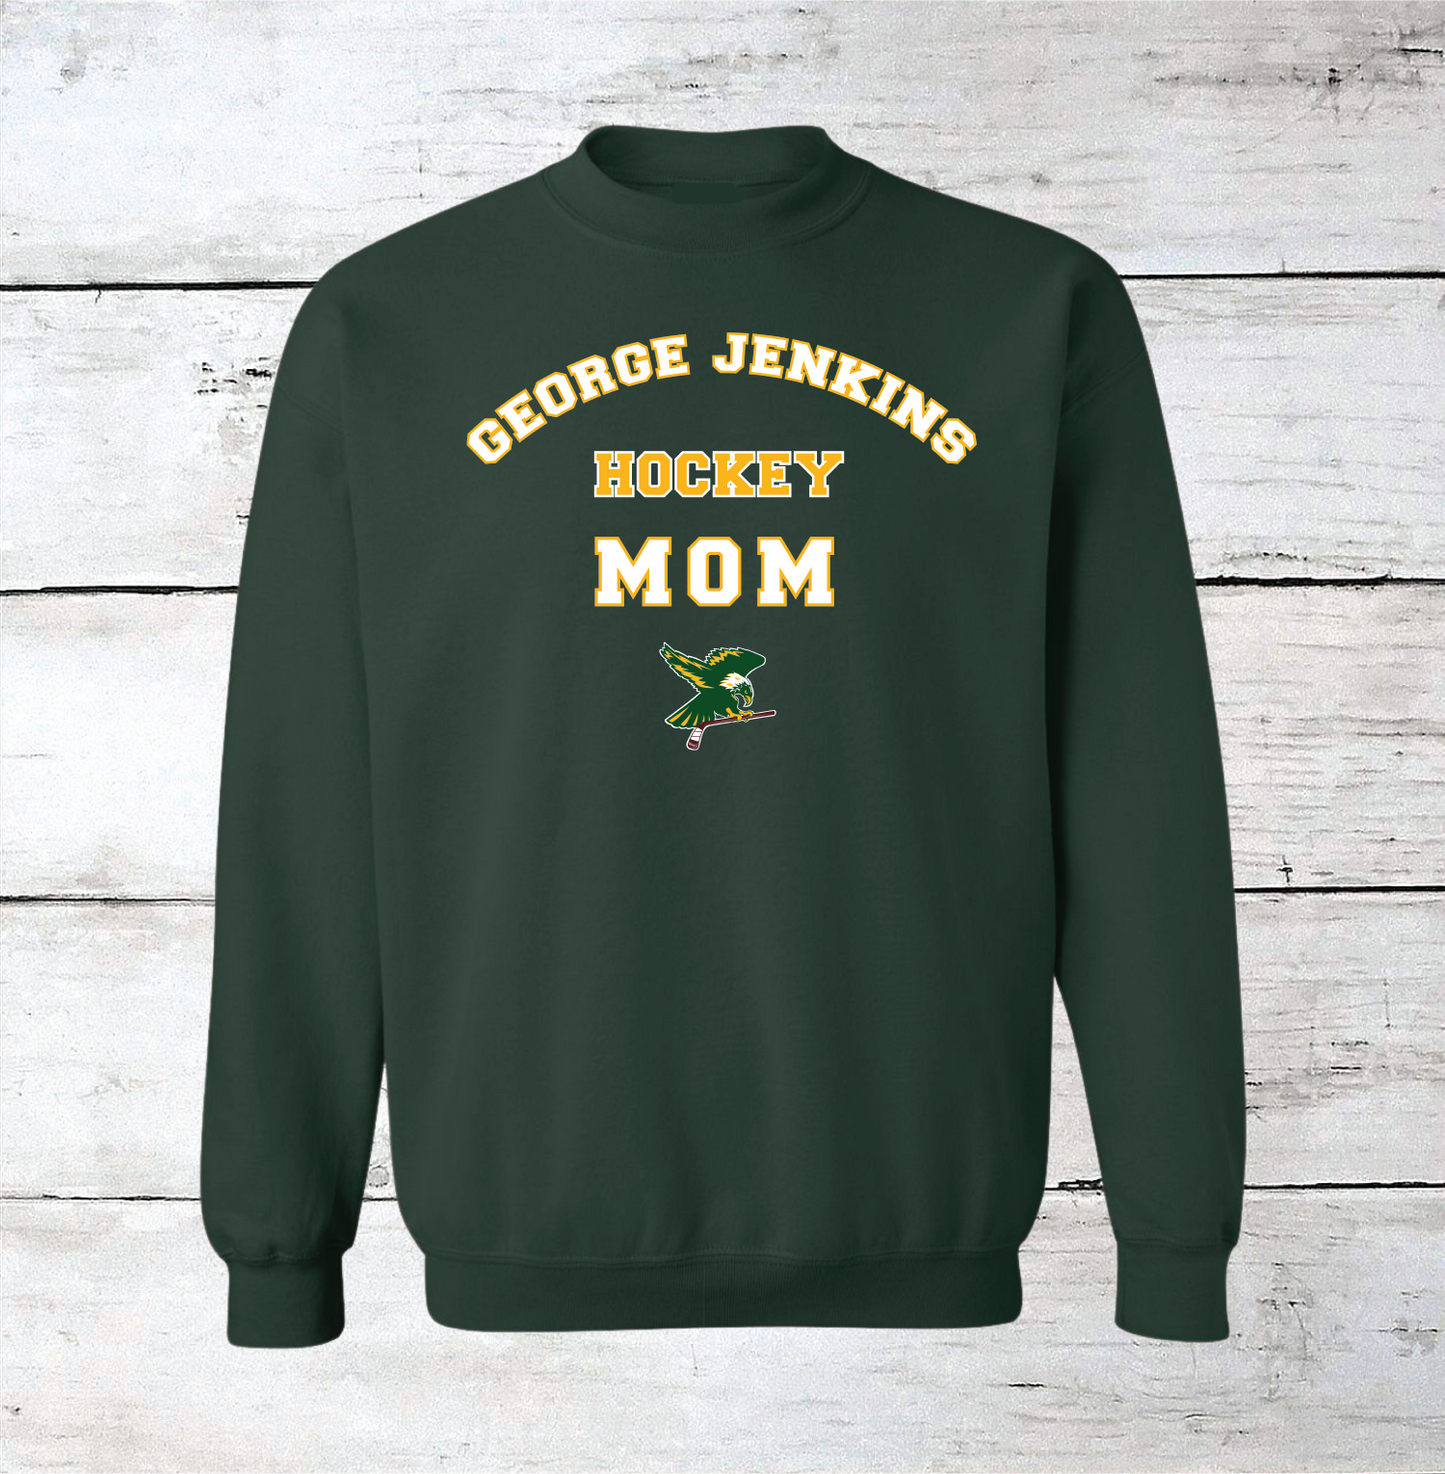 George Jenkins Hockey Mom Crewneck Sweatshirt